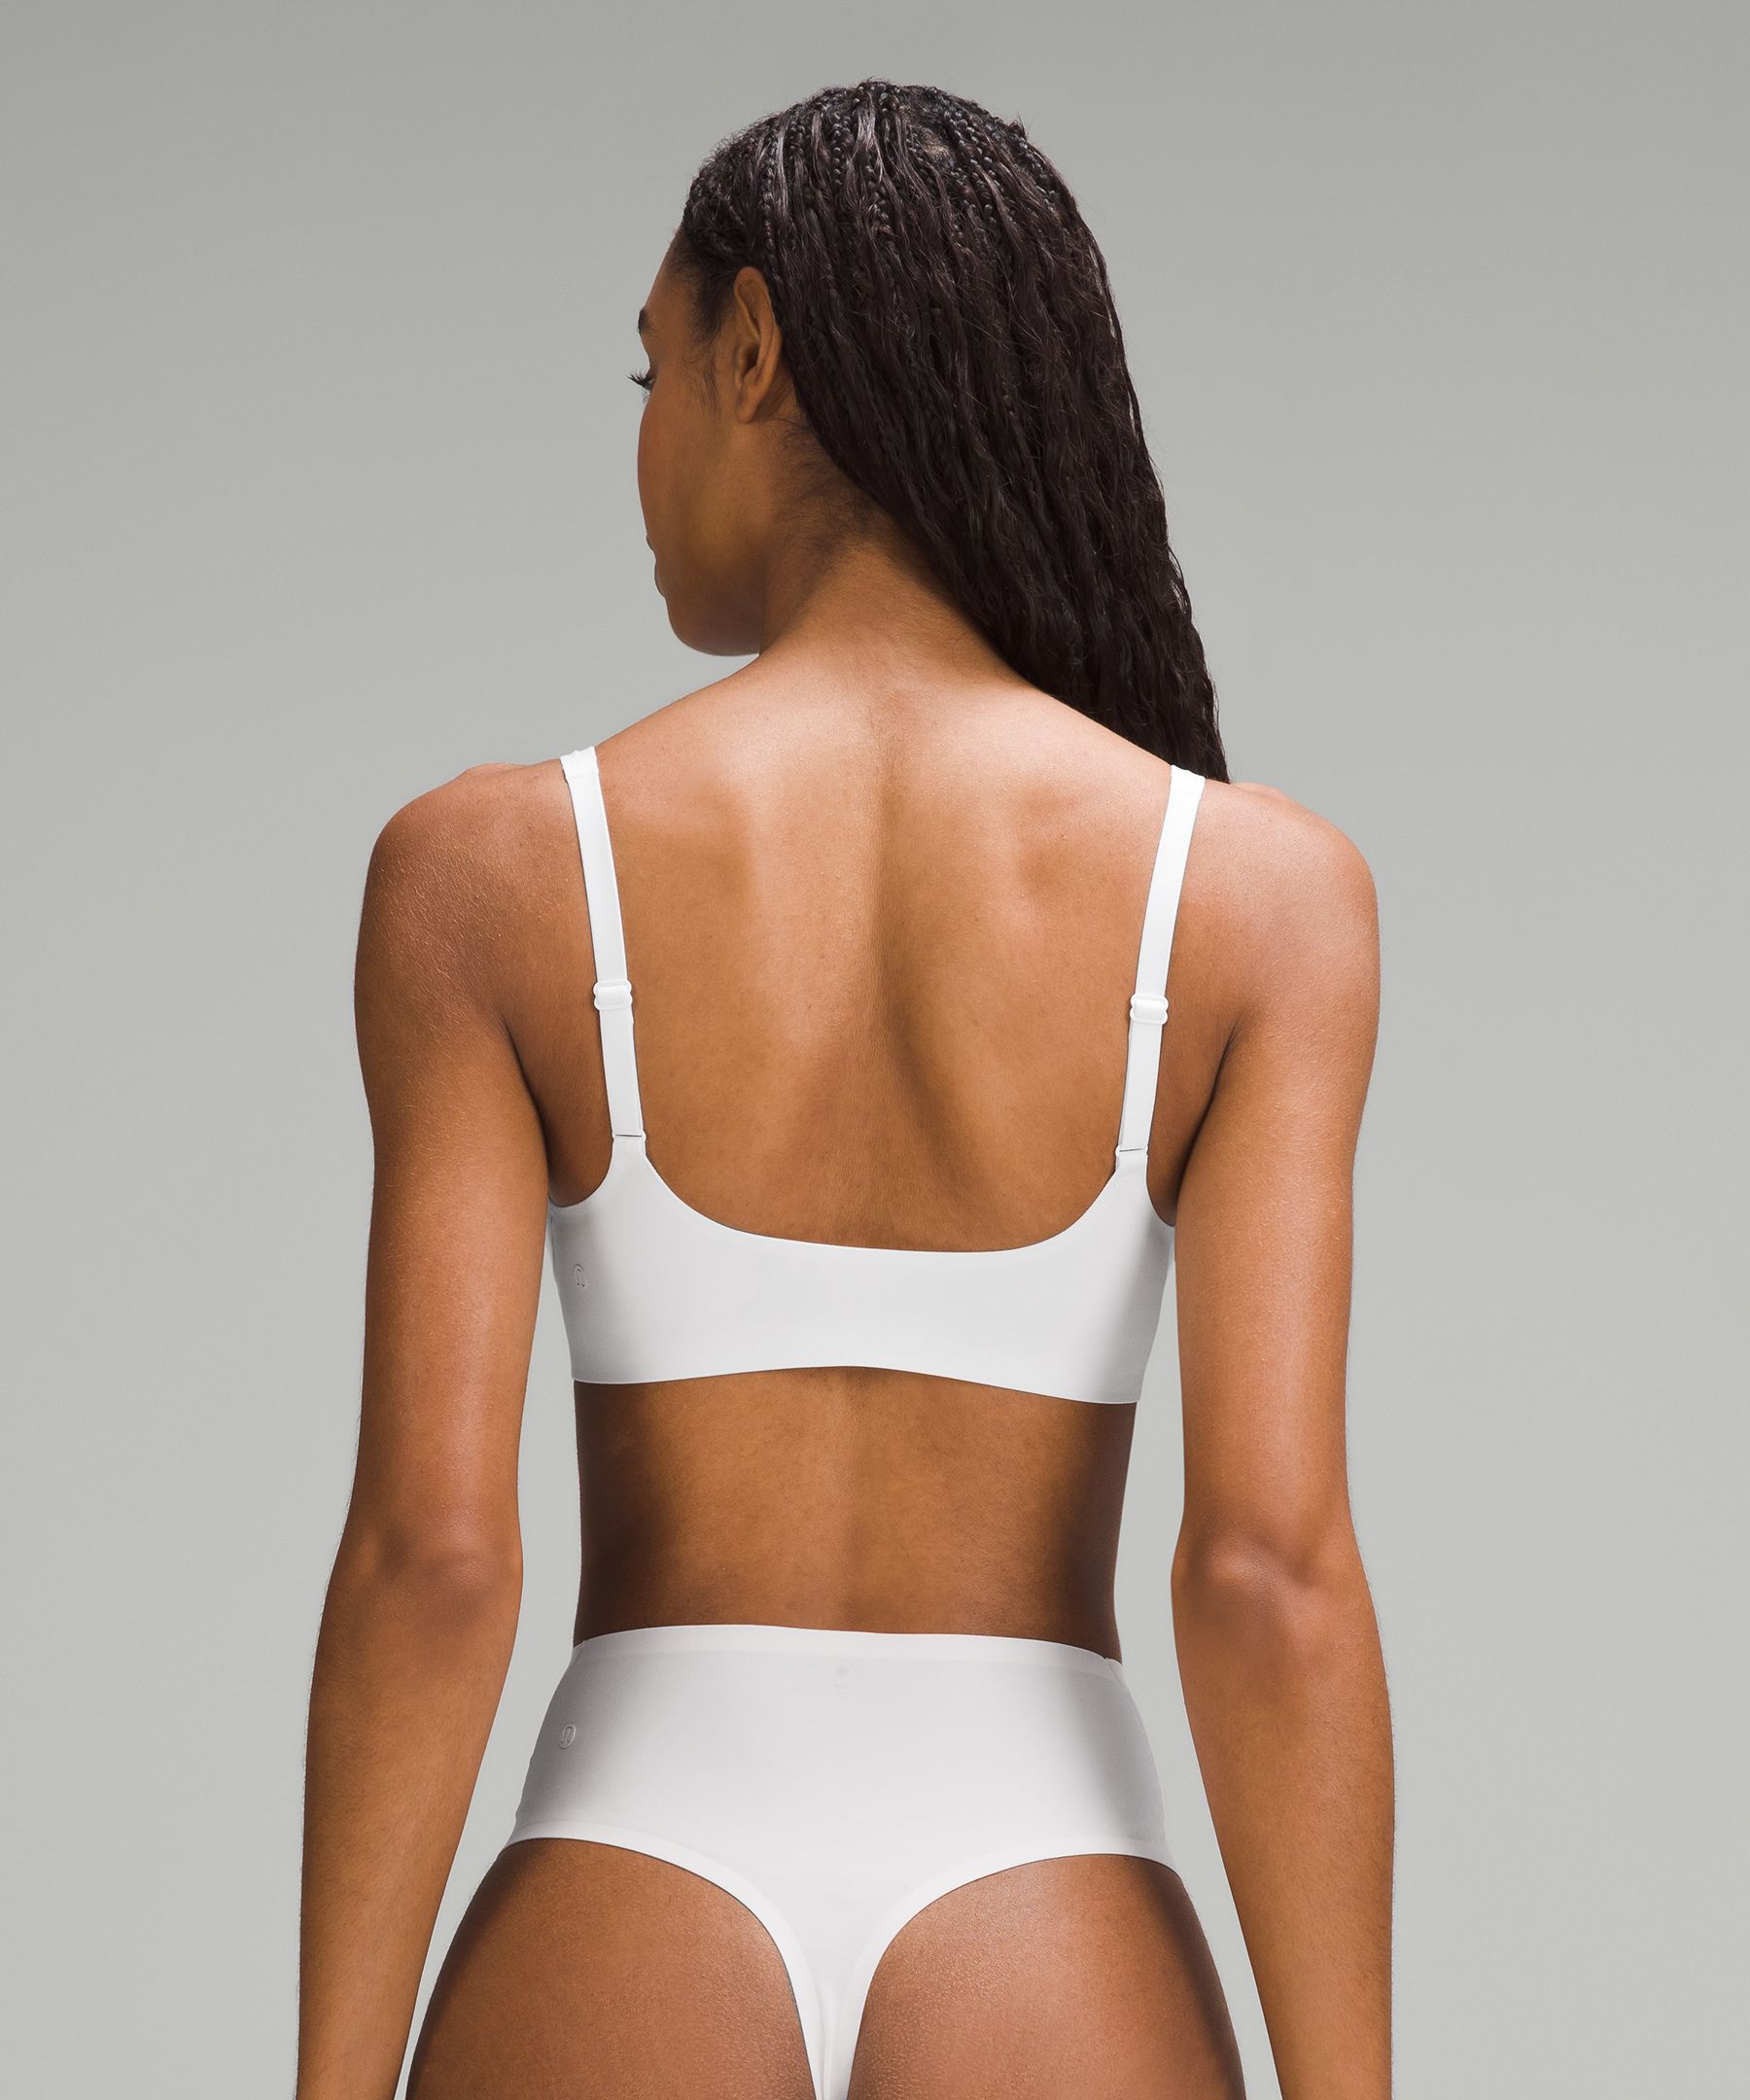  Y-Back - Women's Bras / Women's Lingerie & Underwear